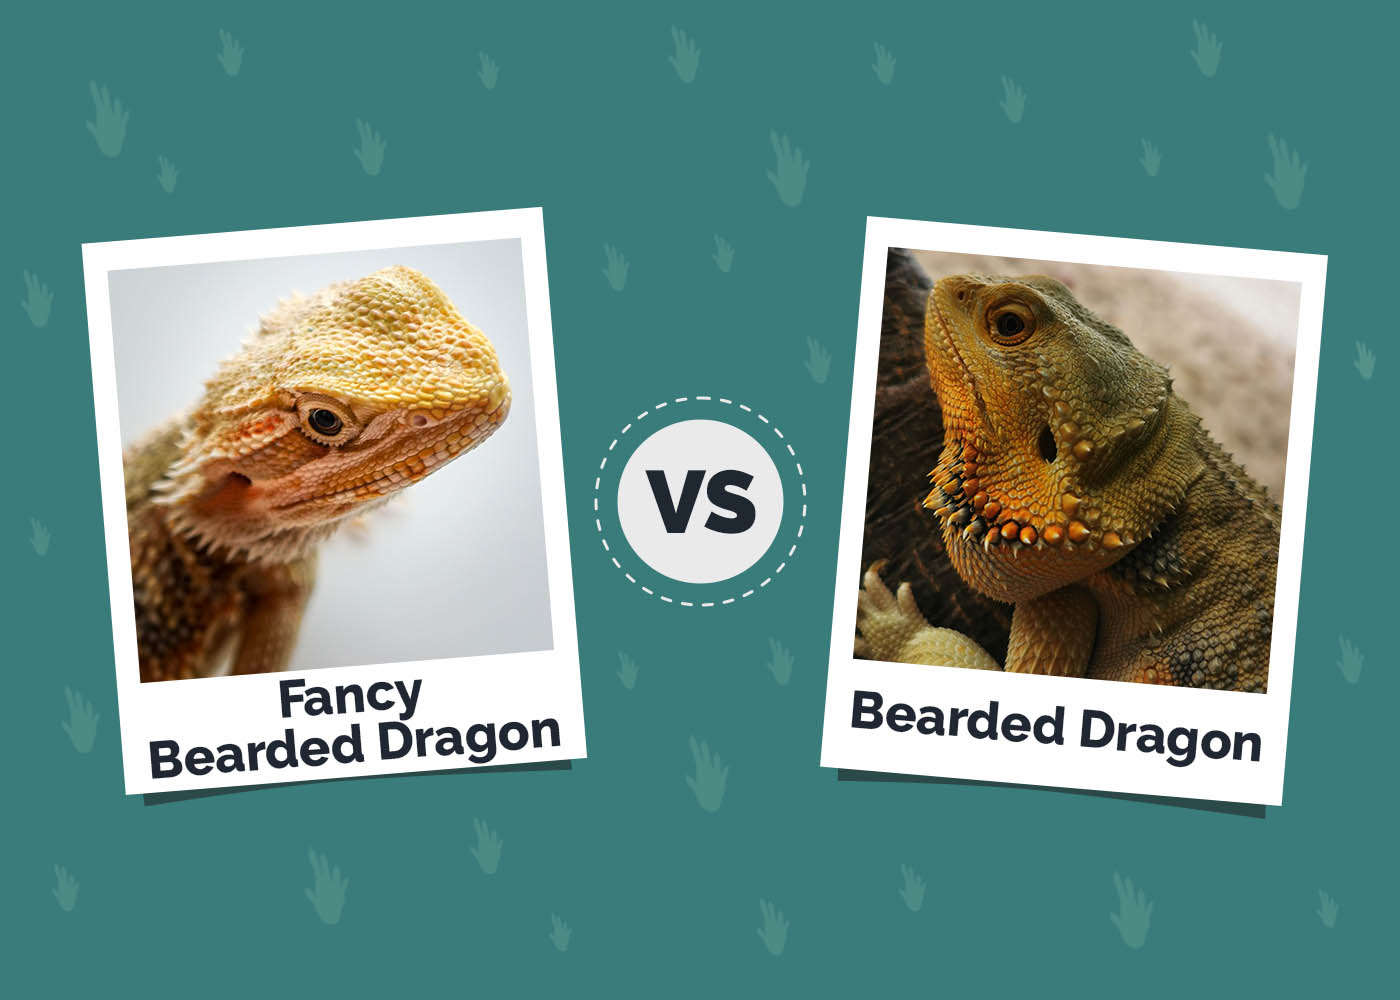 Fancy Bearded Dragon vs Bearded Dragon